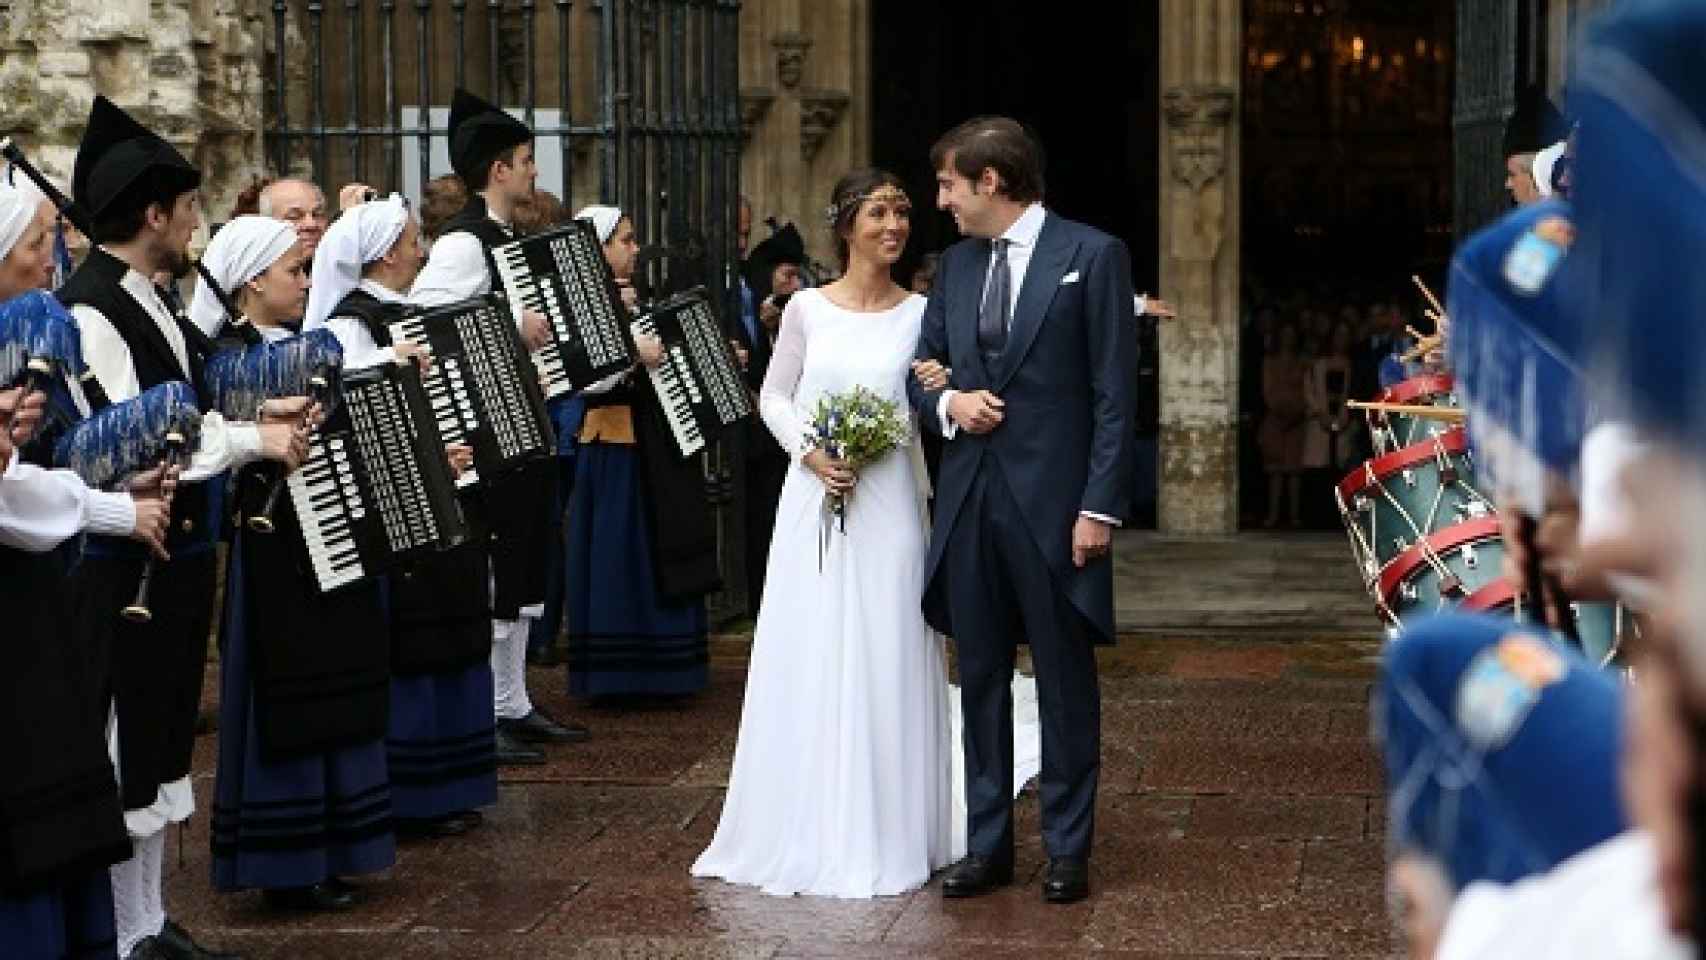 La boda del año se celebró en Asturias